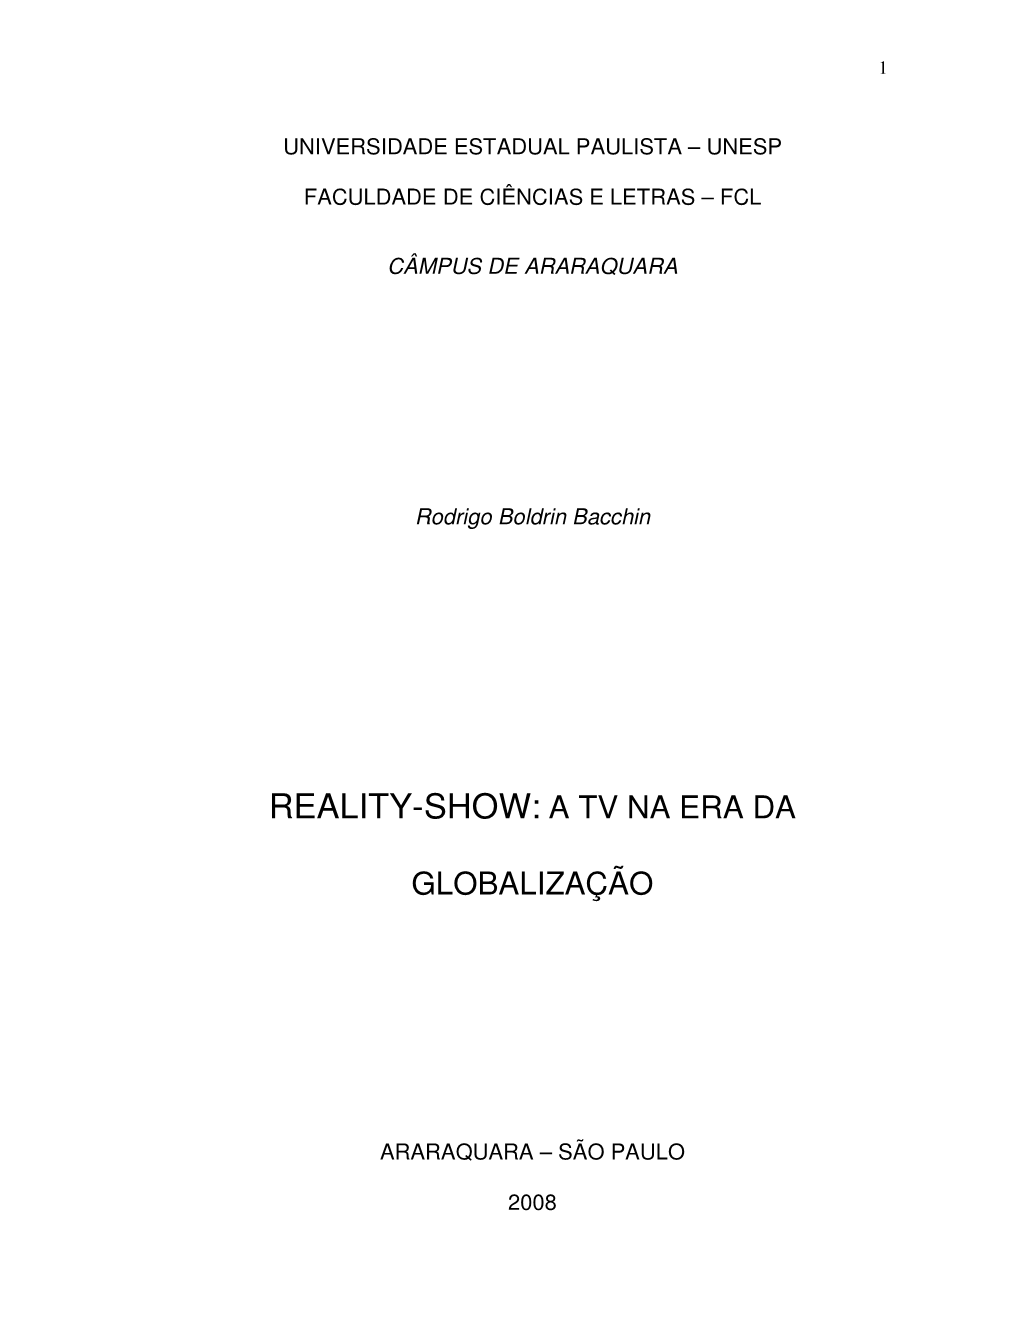 Reality-Show: a Tv Na Era Da